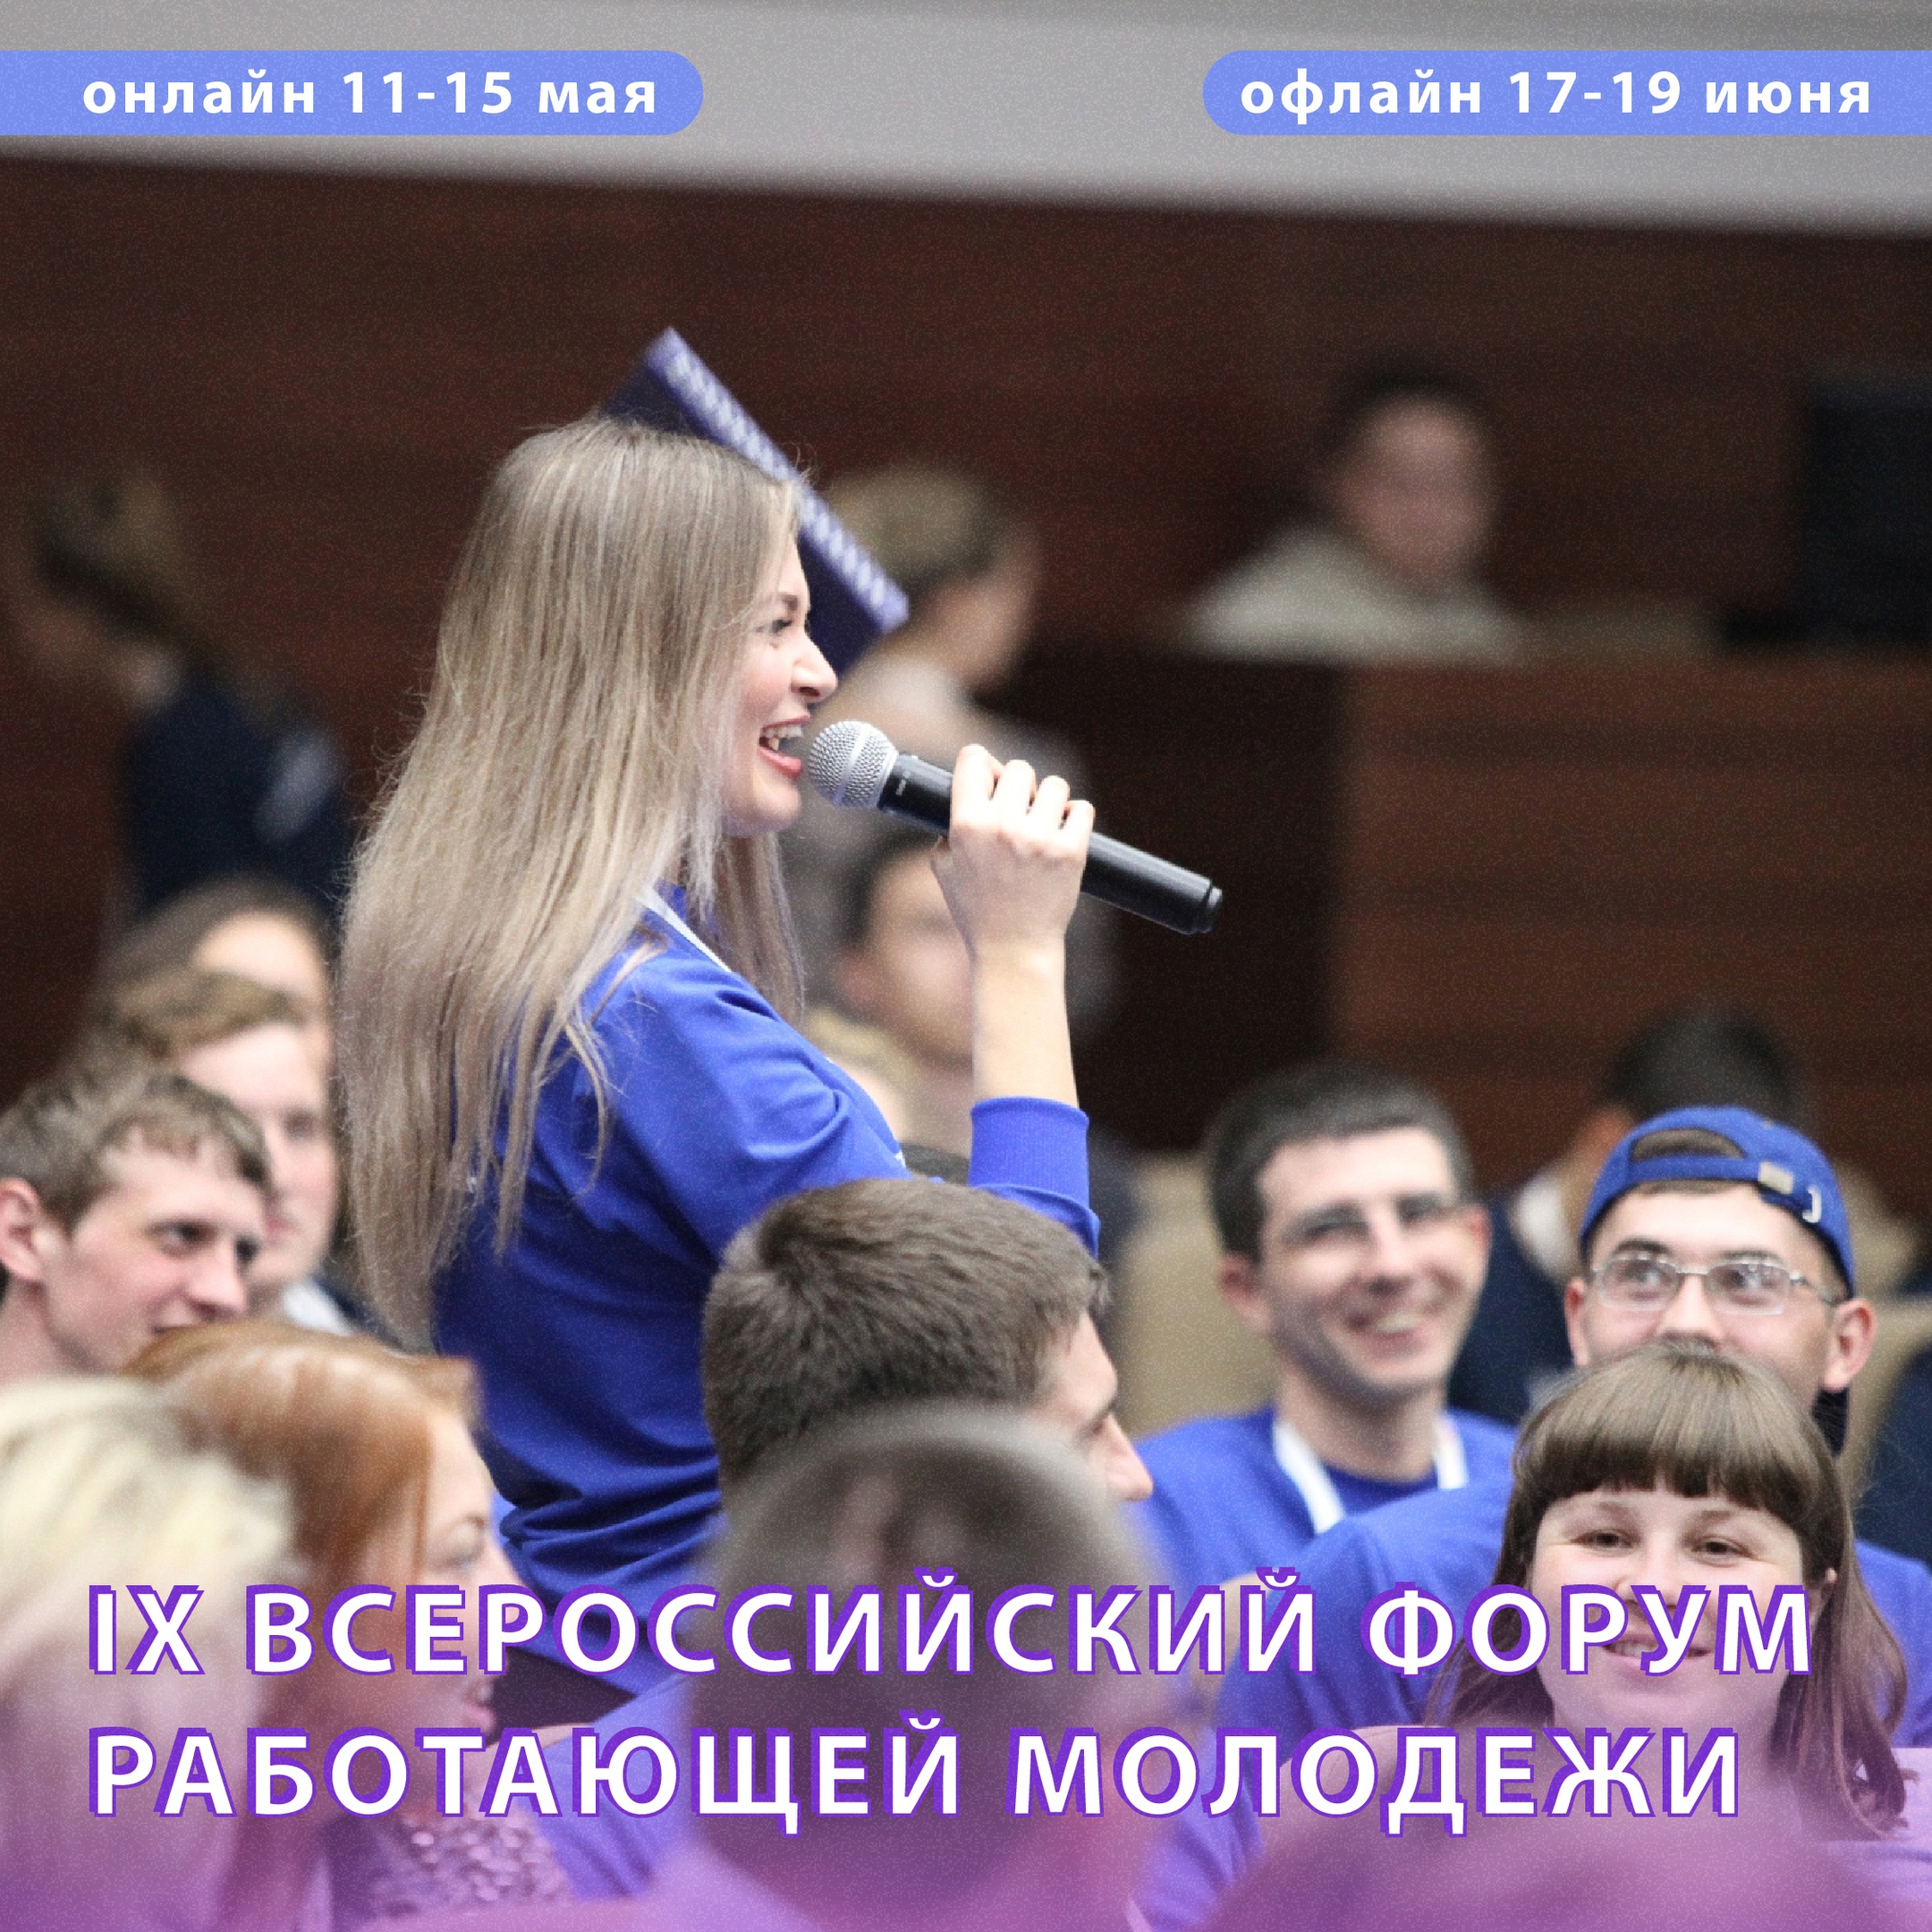 Молодёжь, тебя зовут на IX Всероссийский форум работающей молодёжи